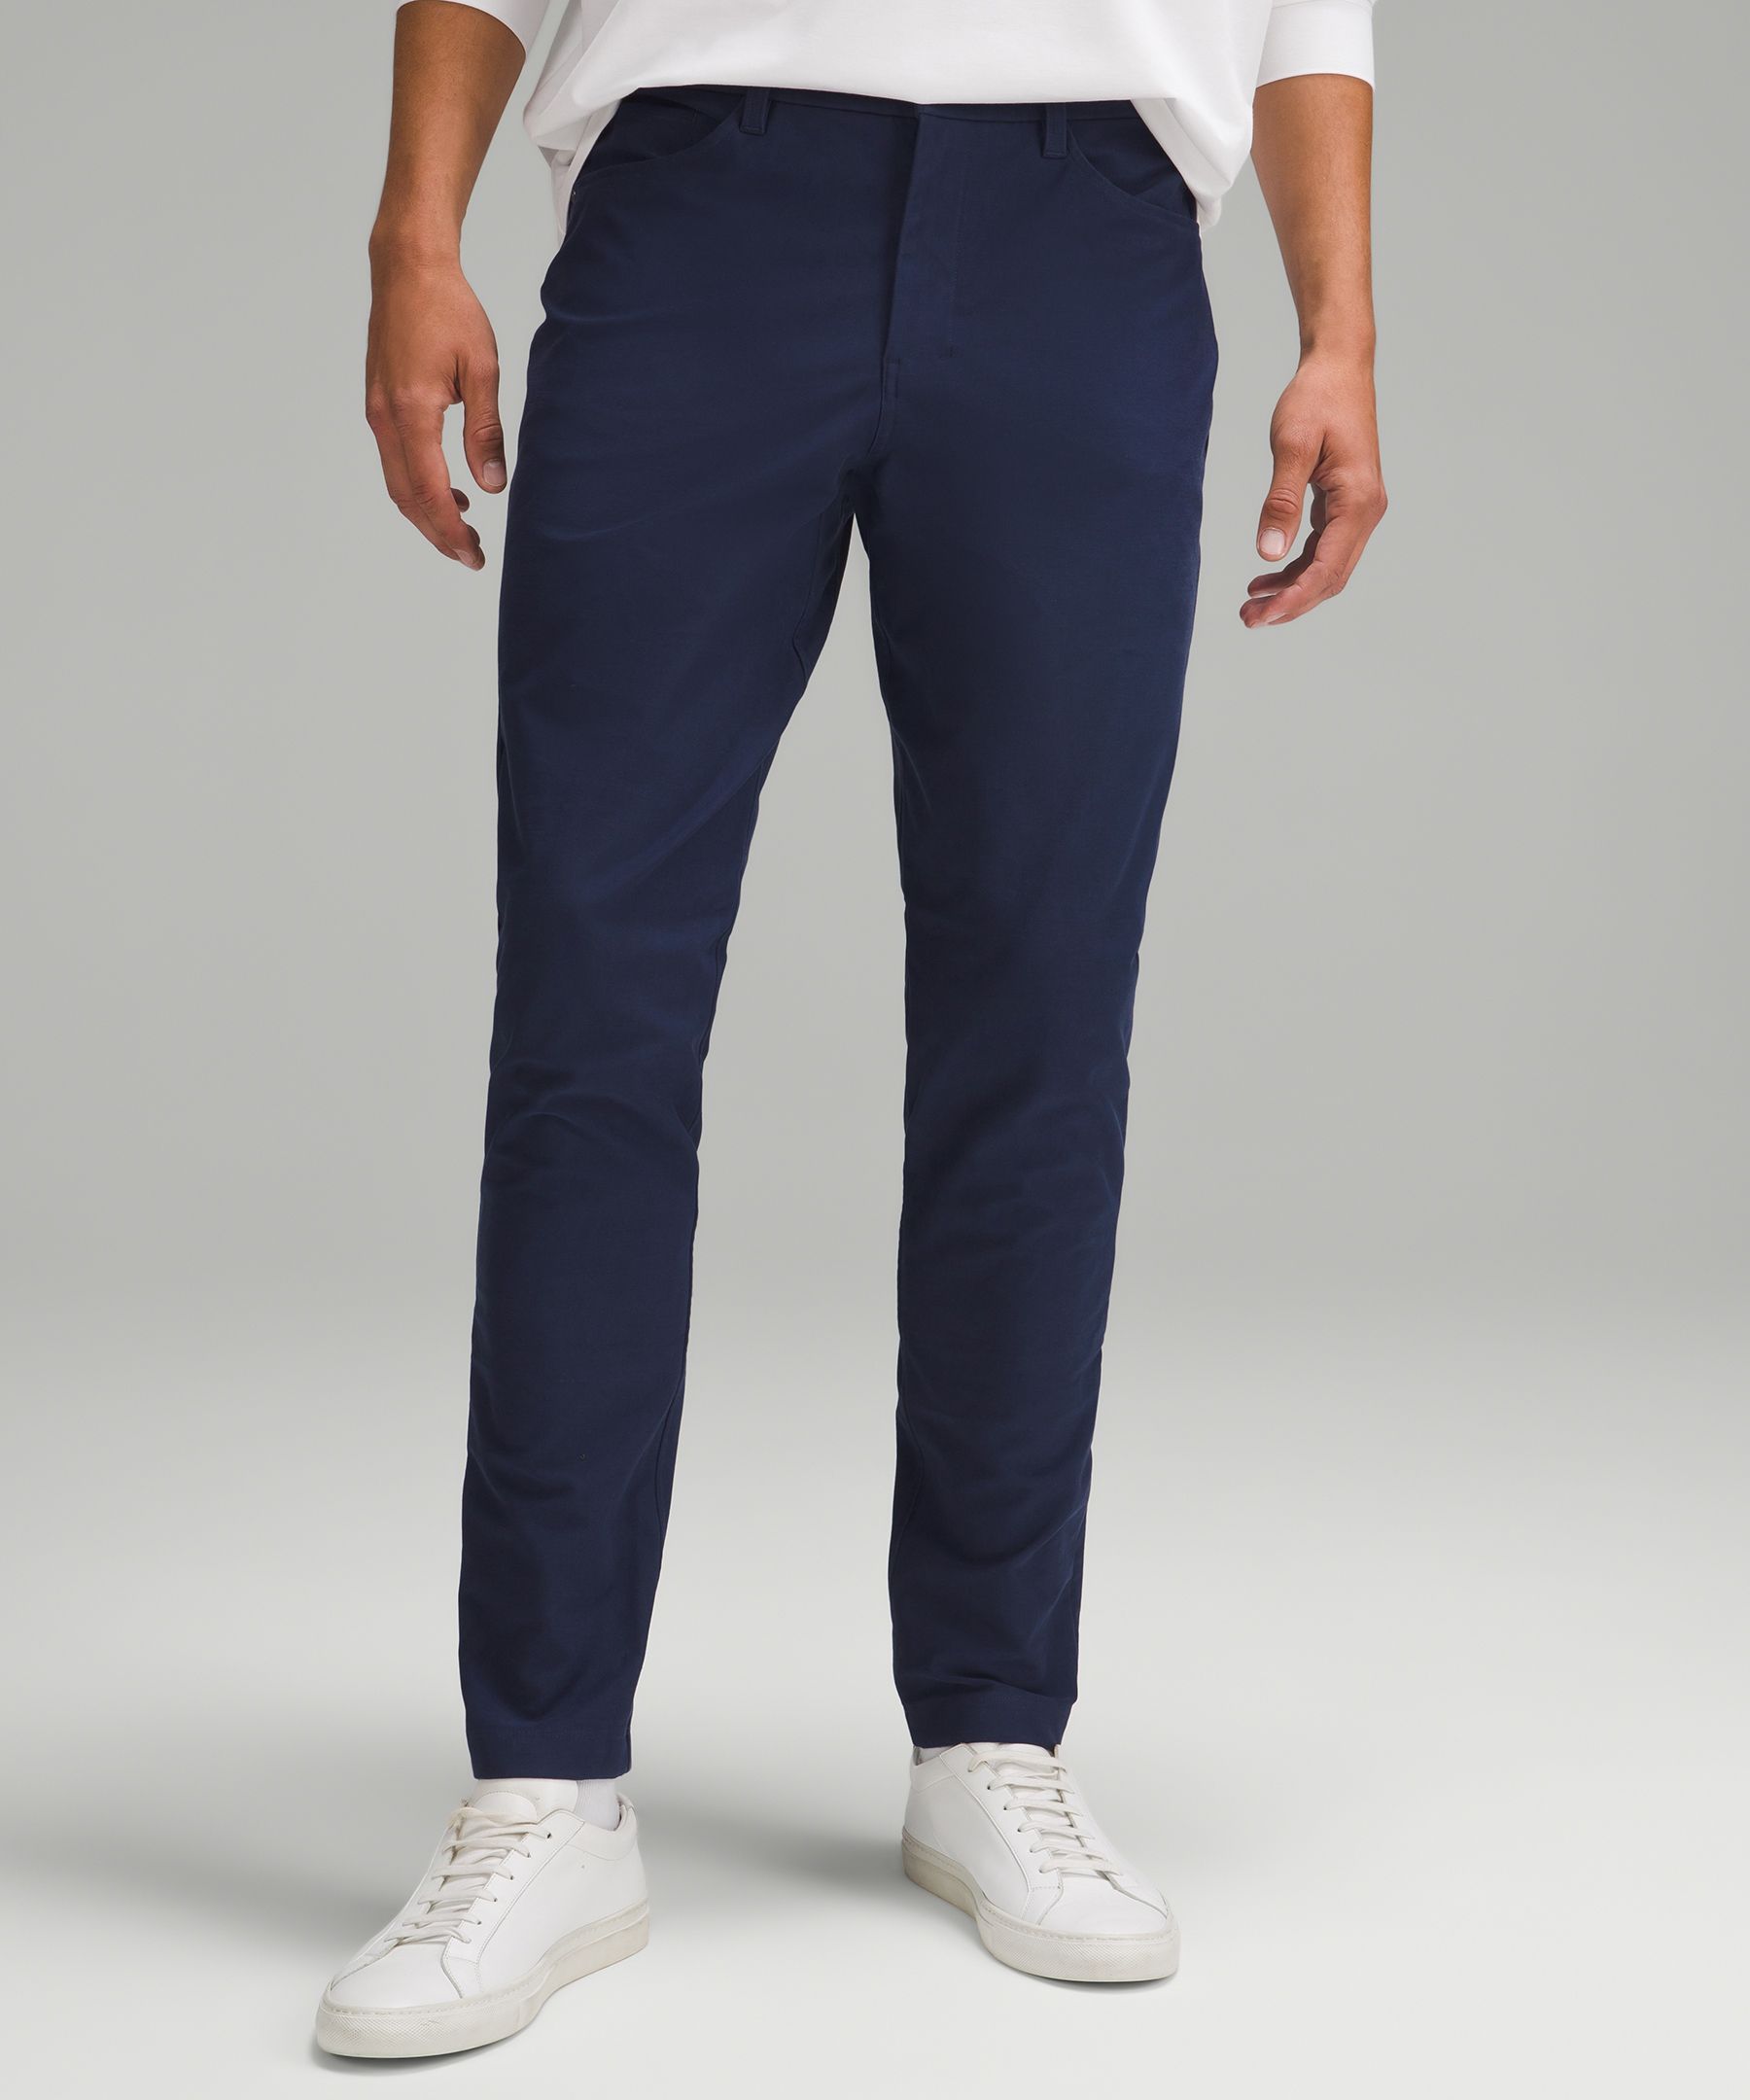 ABC Slim-Fit 5 Pocket Pant 34L *Utilitech, Men's Trousers